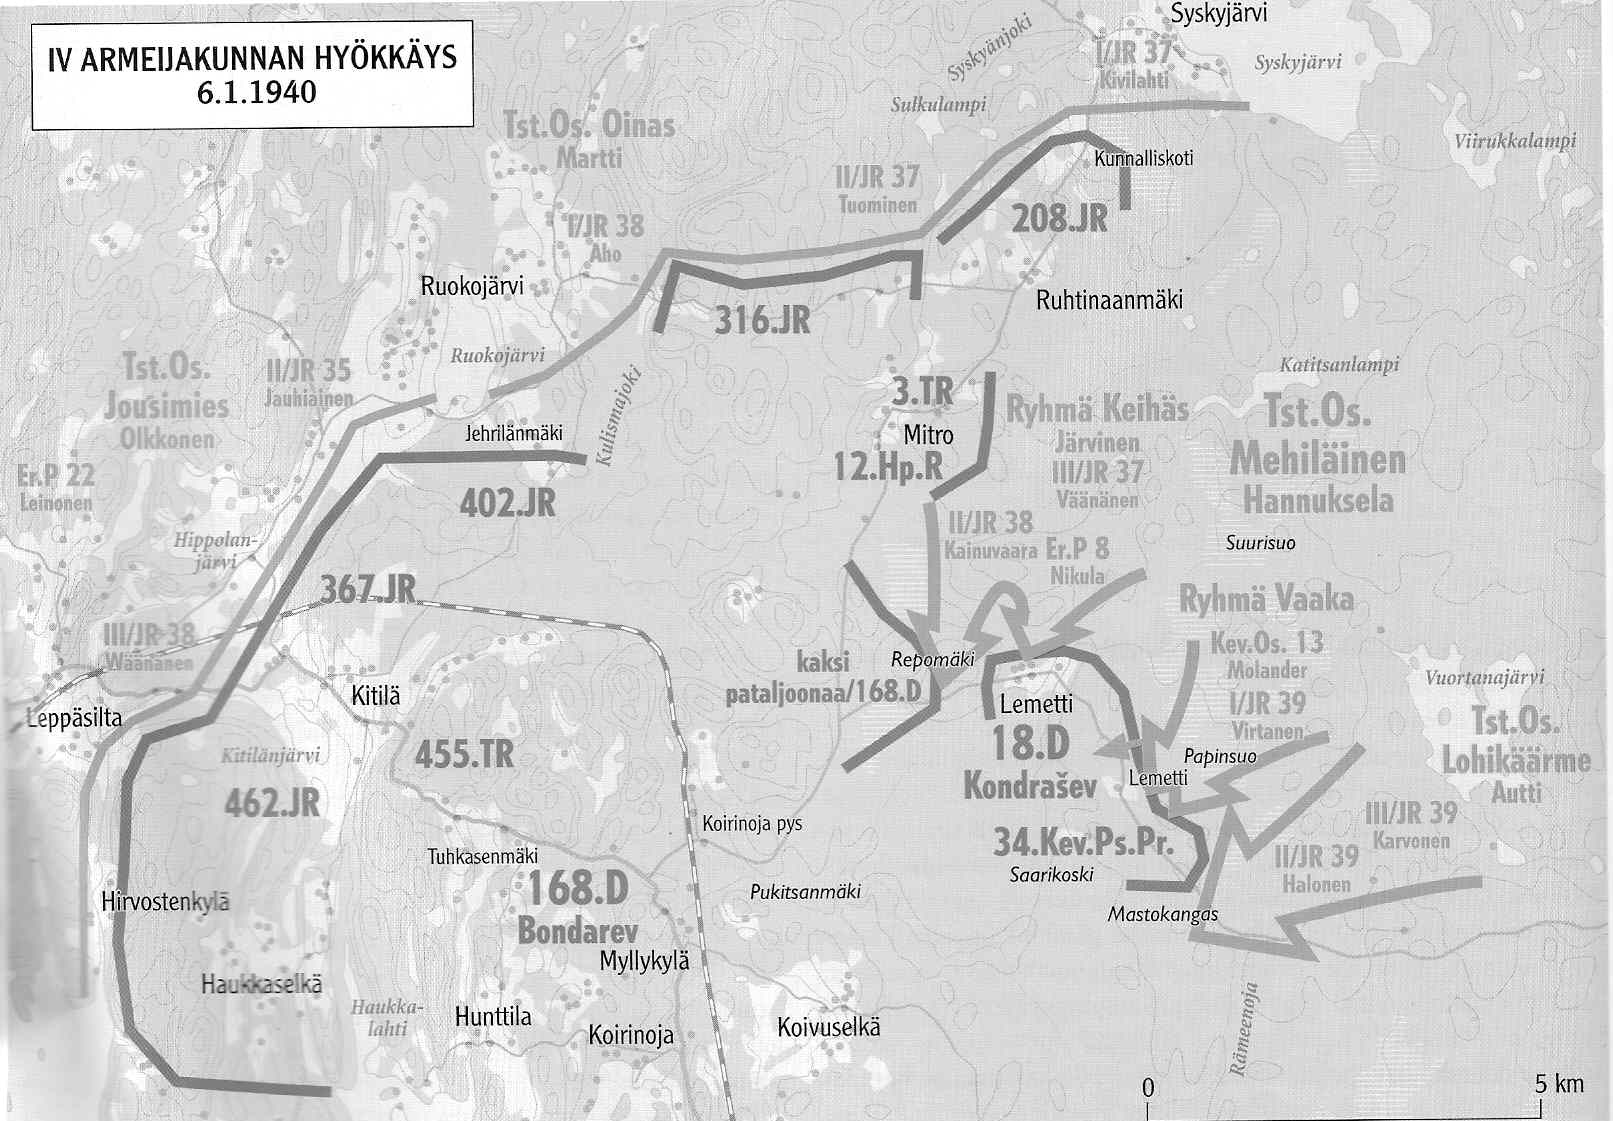 18 сд 13. Леметти 1939-1940 на карте. Леметти на карте Карелии. Раунио а. сражения зимней войны.. Район Леметти Южное на карте.